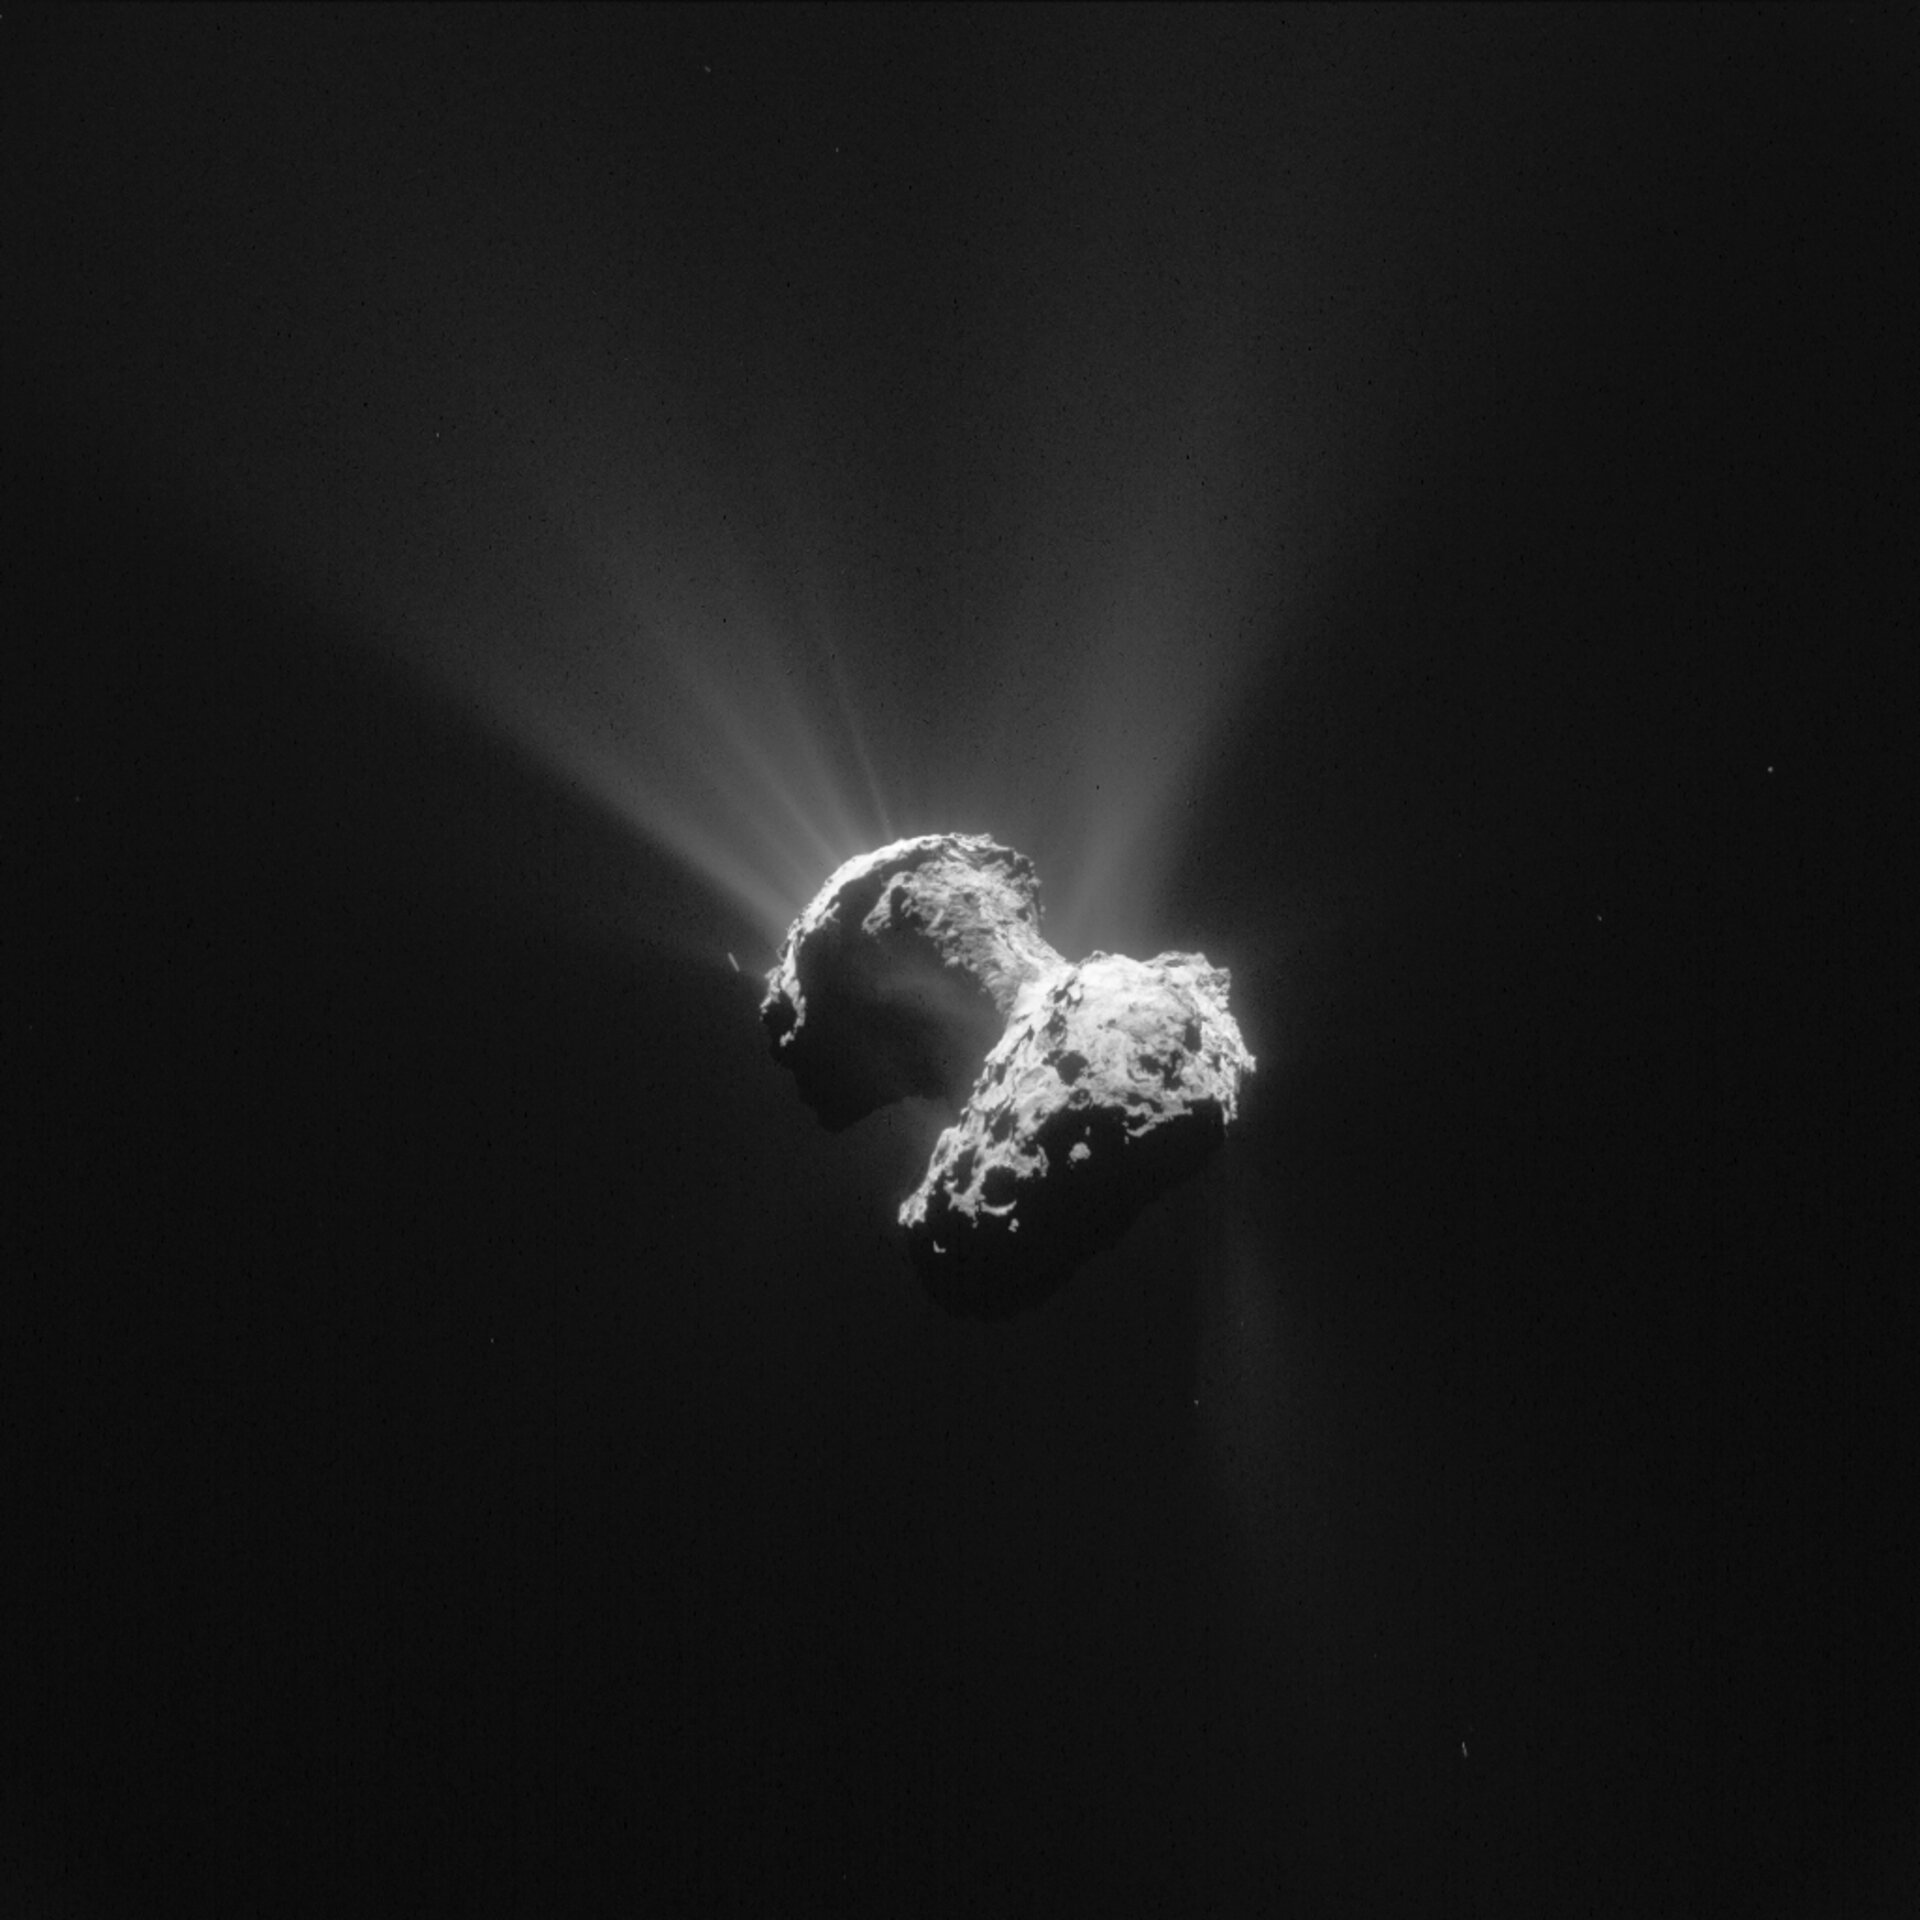 Comet activity, 21 June